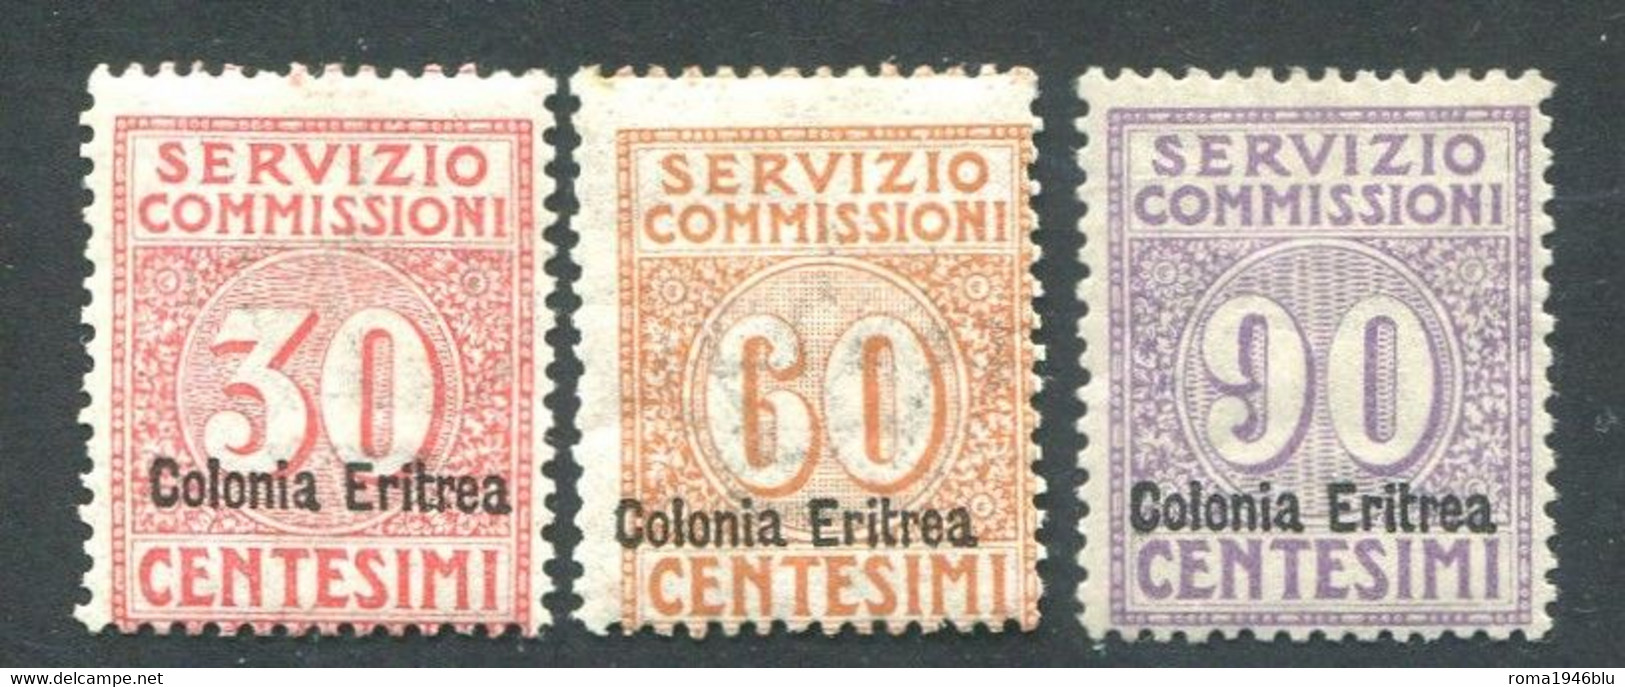 ERITREA 1916 SERVIZIO COMMISSIONI SERIE CPL.* LINGUELLA IMPERCETTIBILE - Erythrée